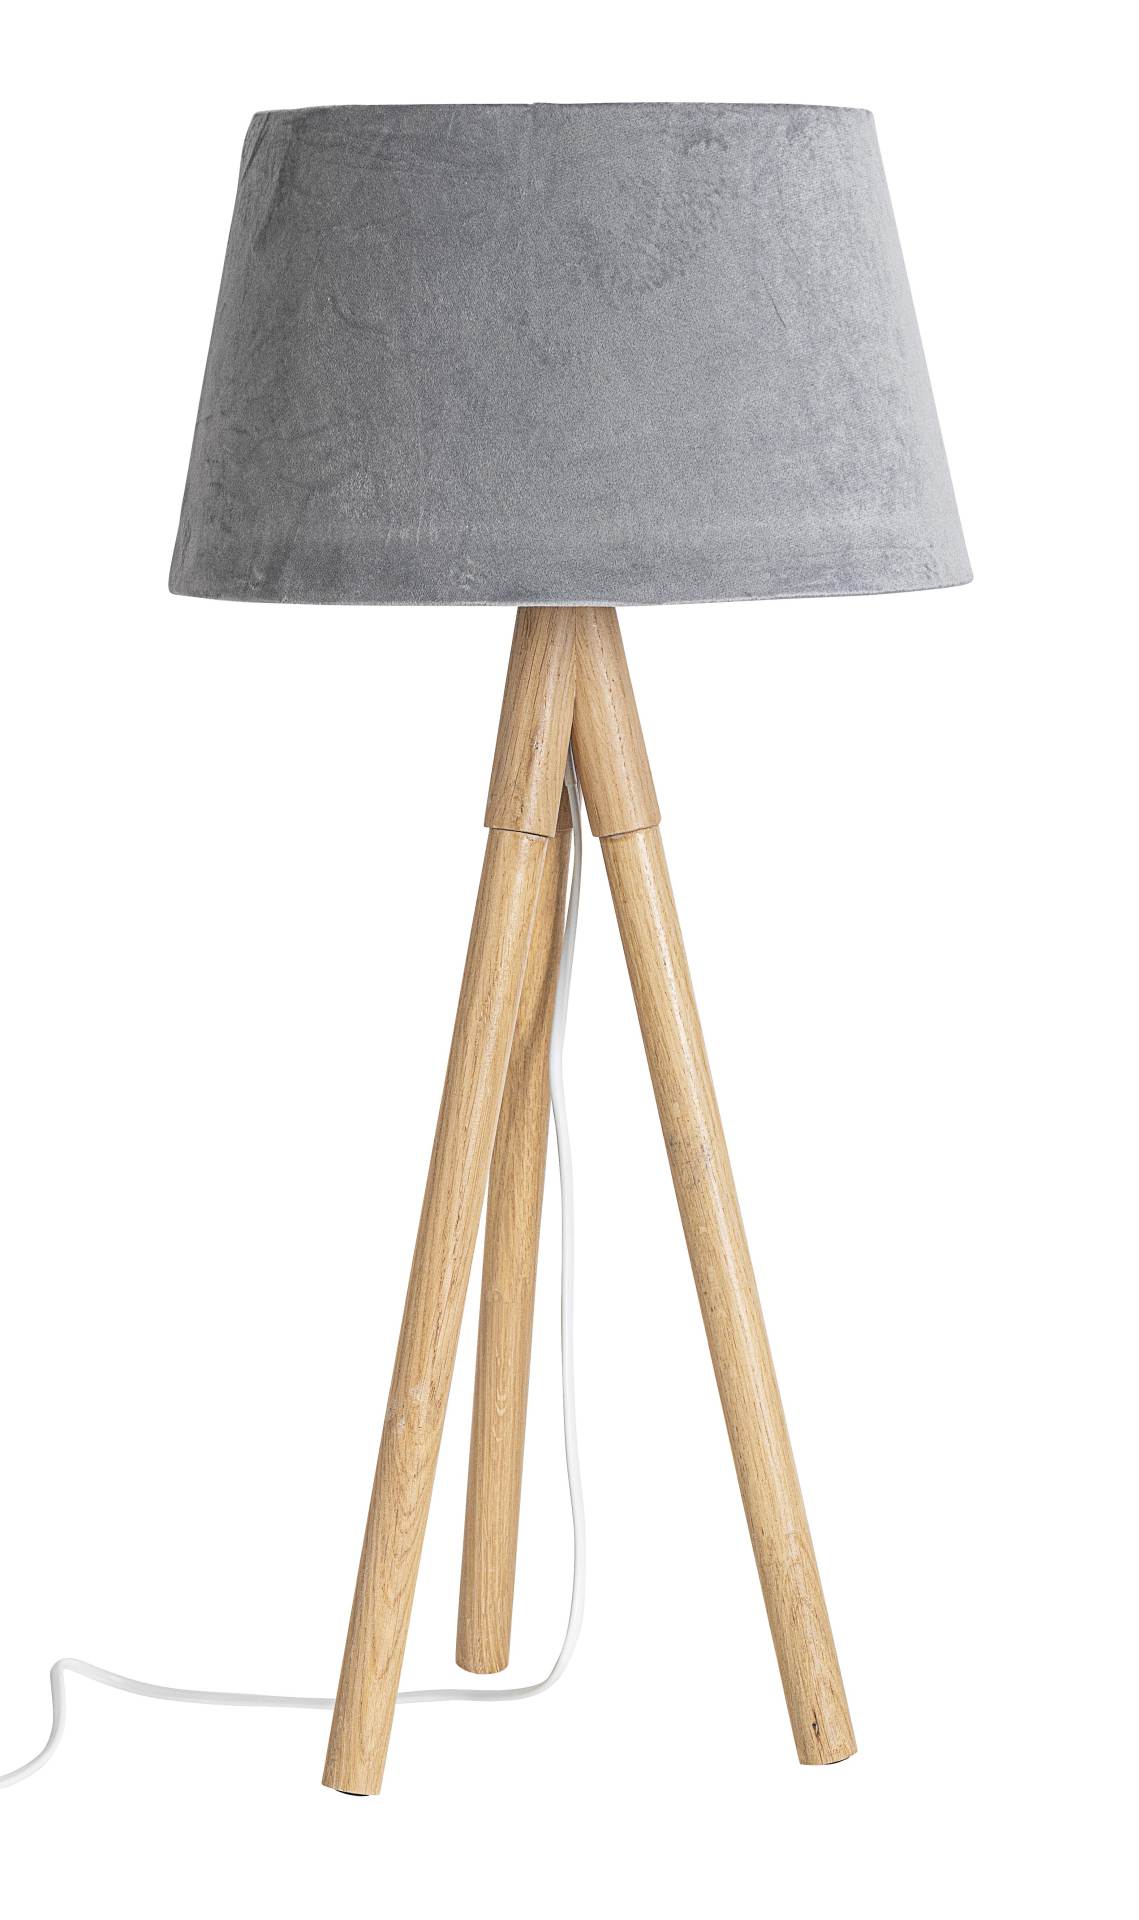 Die Tischleuchte Wallas überzeugt mit ihrem klassischen Design. Gefertigt wurde sie aus Tannenholz, welches einen natürlichen Farbton besitzt. Der Lampenschirm ist aus Samt und hat eine graue Farbe. Die Lampe besitzt eine Höhe von 69 cm.